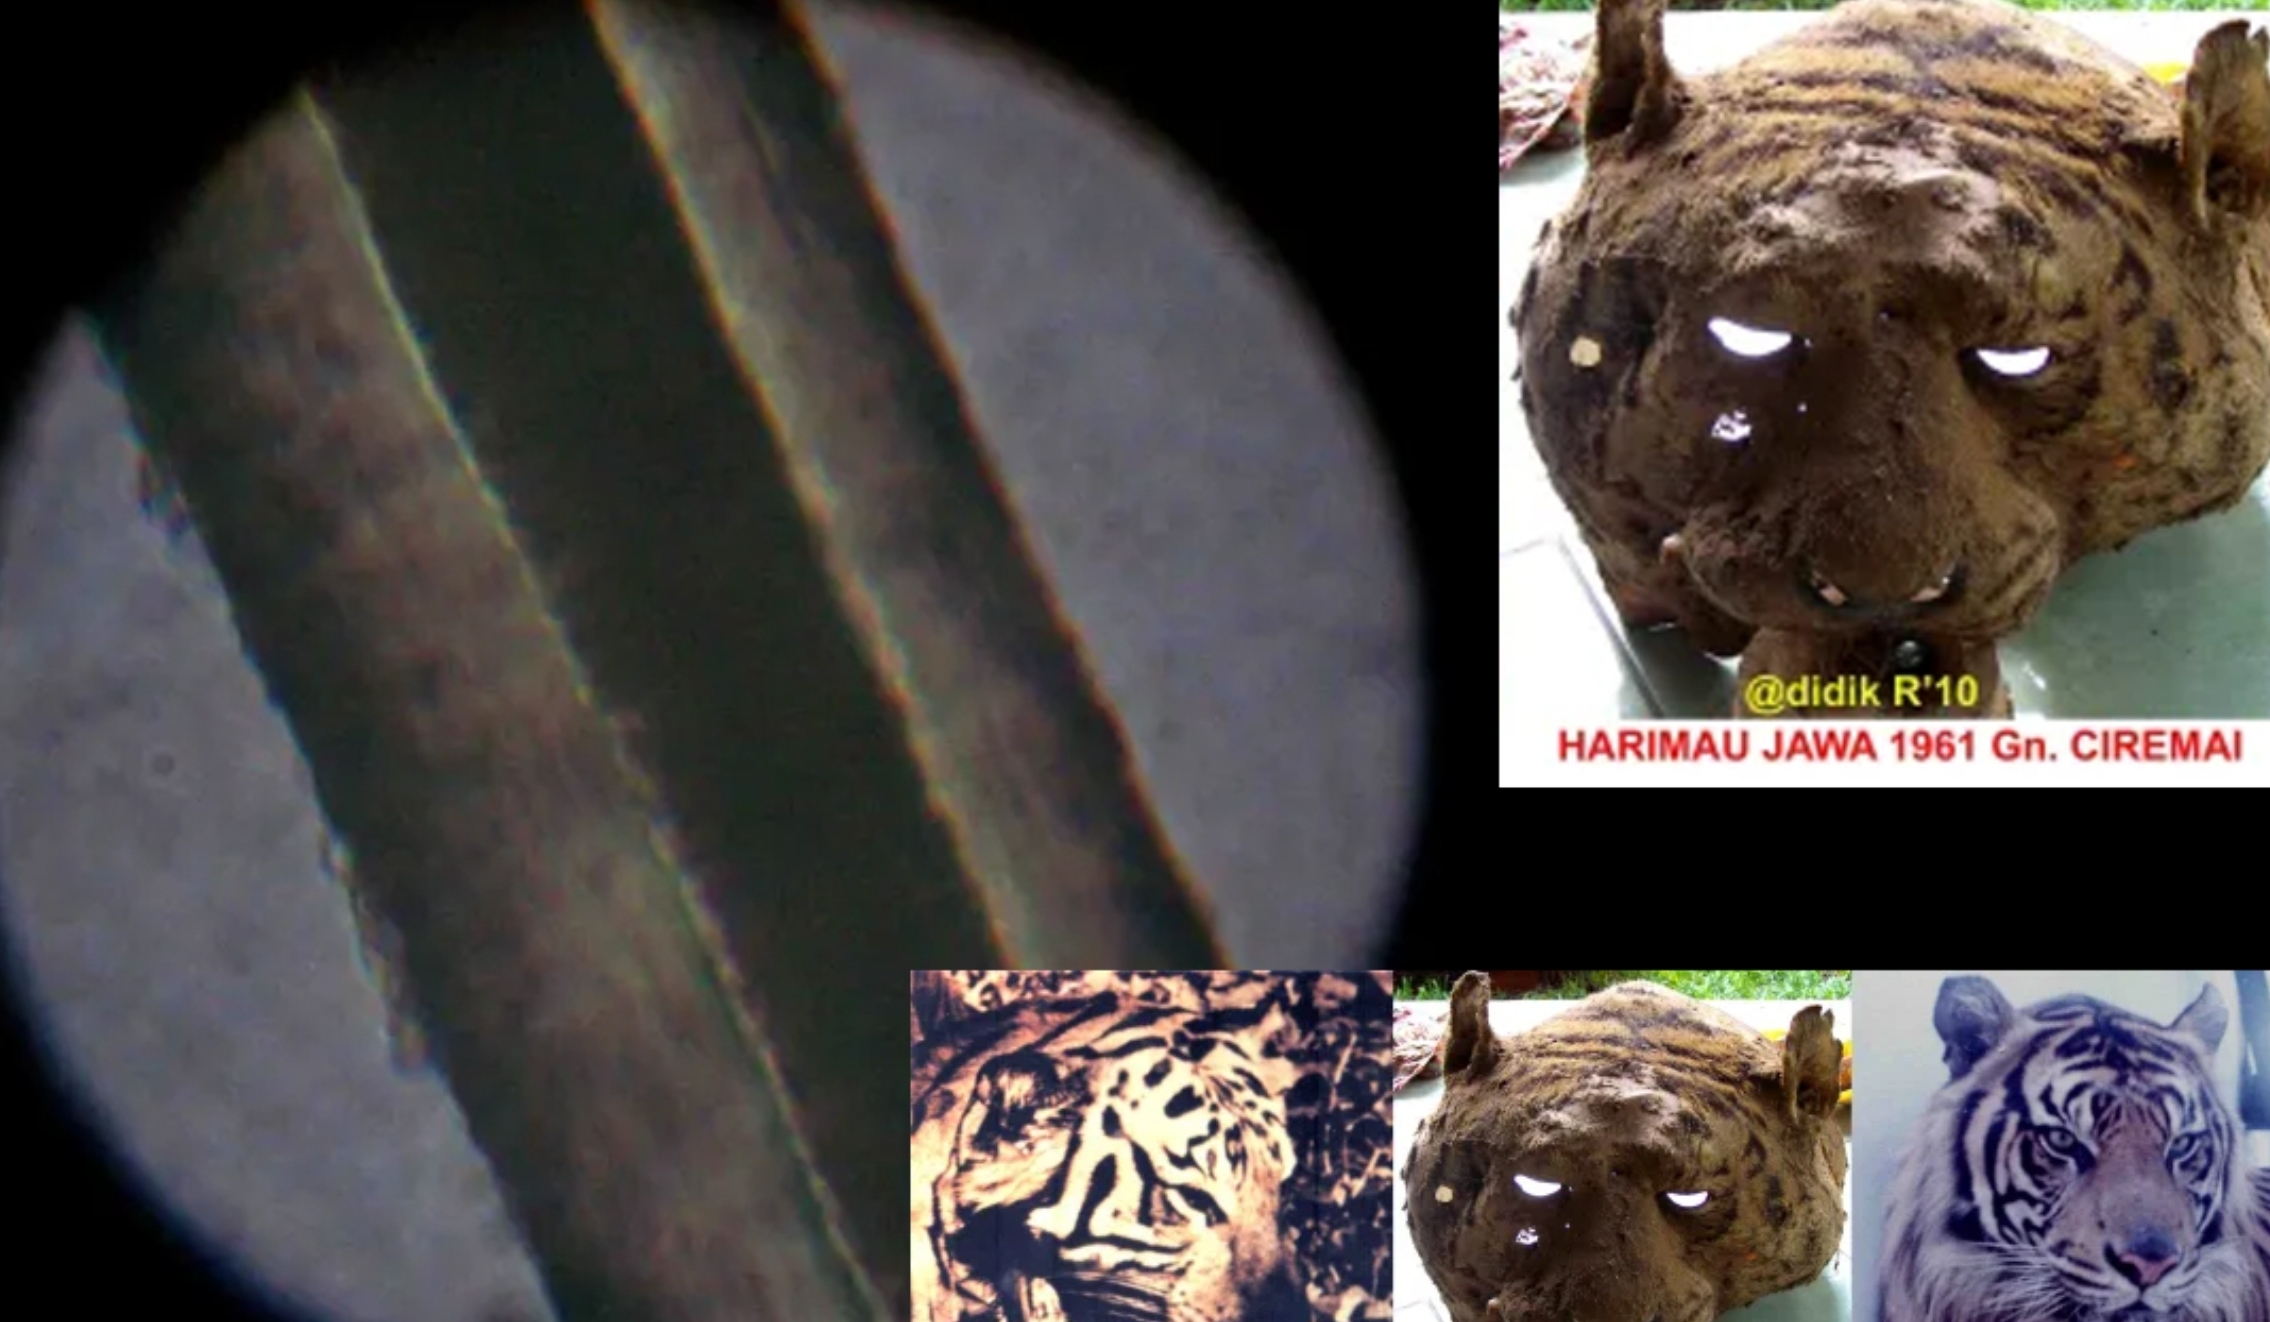 Panjang Hampir 2,5 Meter, Bukti Harimau Jawa Ditembak di Gunung Ciremai Tahun 1961, Sisa Kepala Masih Ada